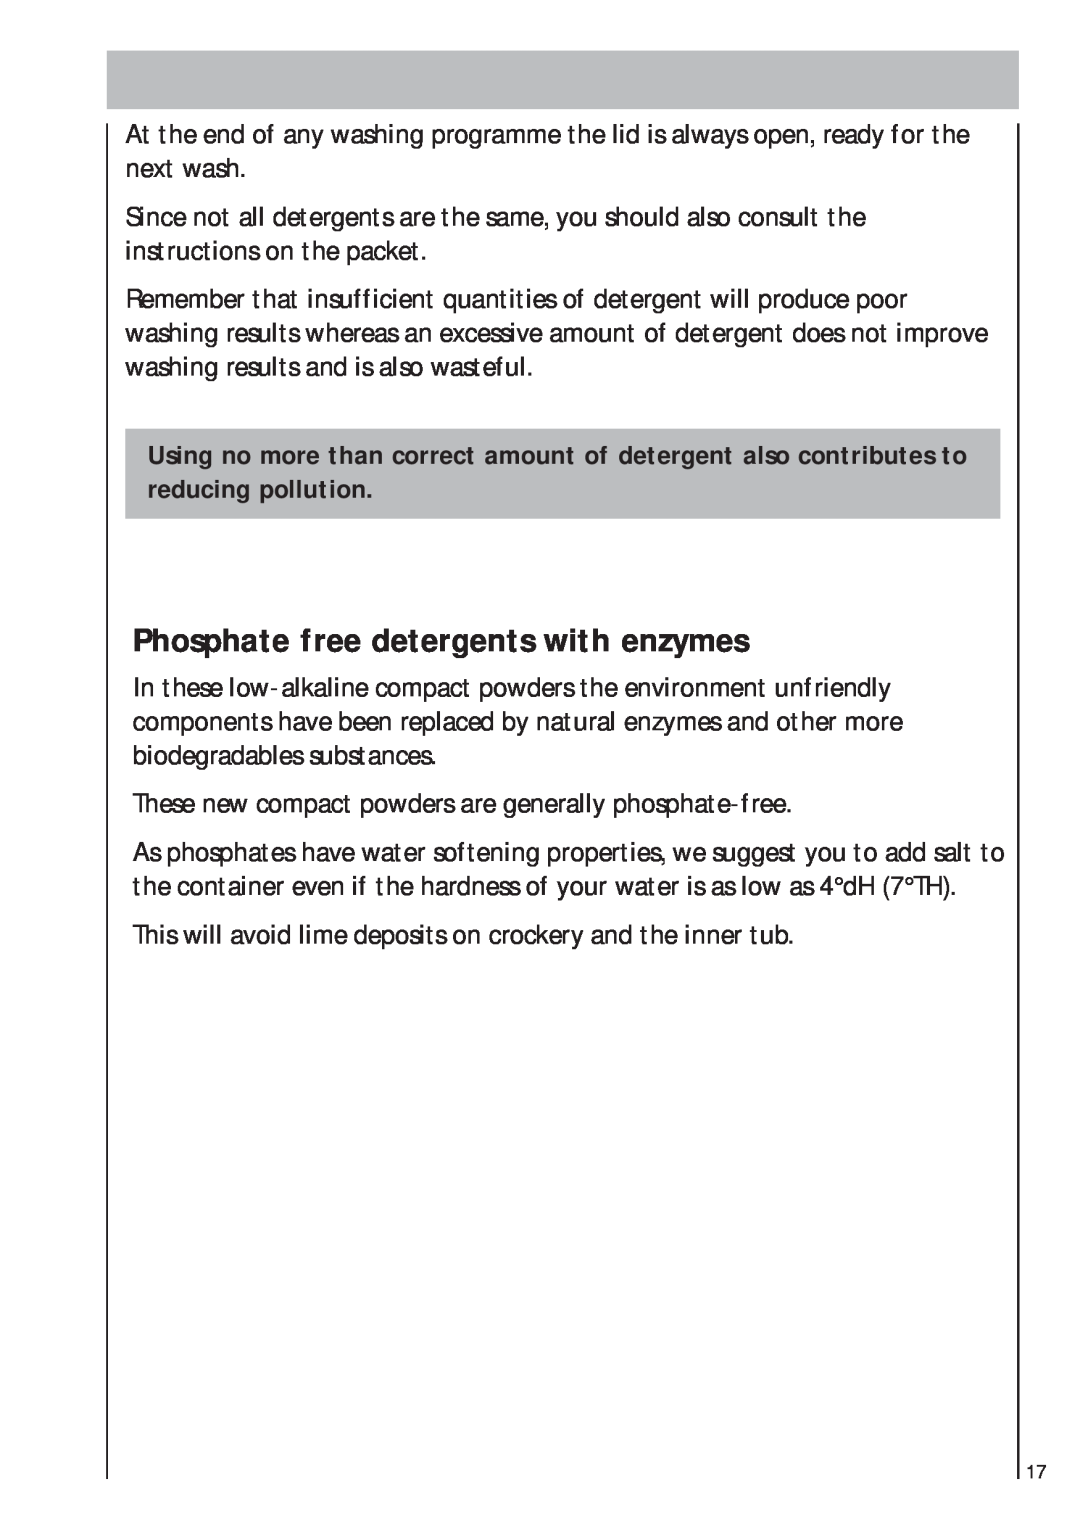 AEG 403 manual Phosphate free detergents with enzymes 